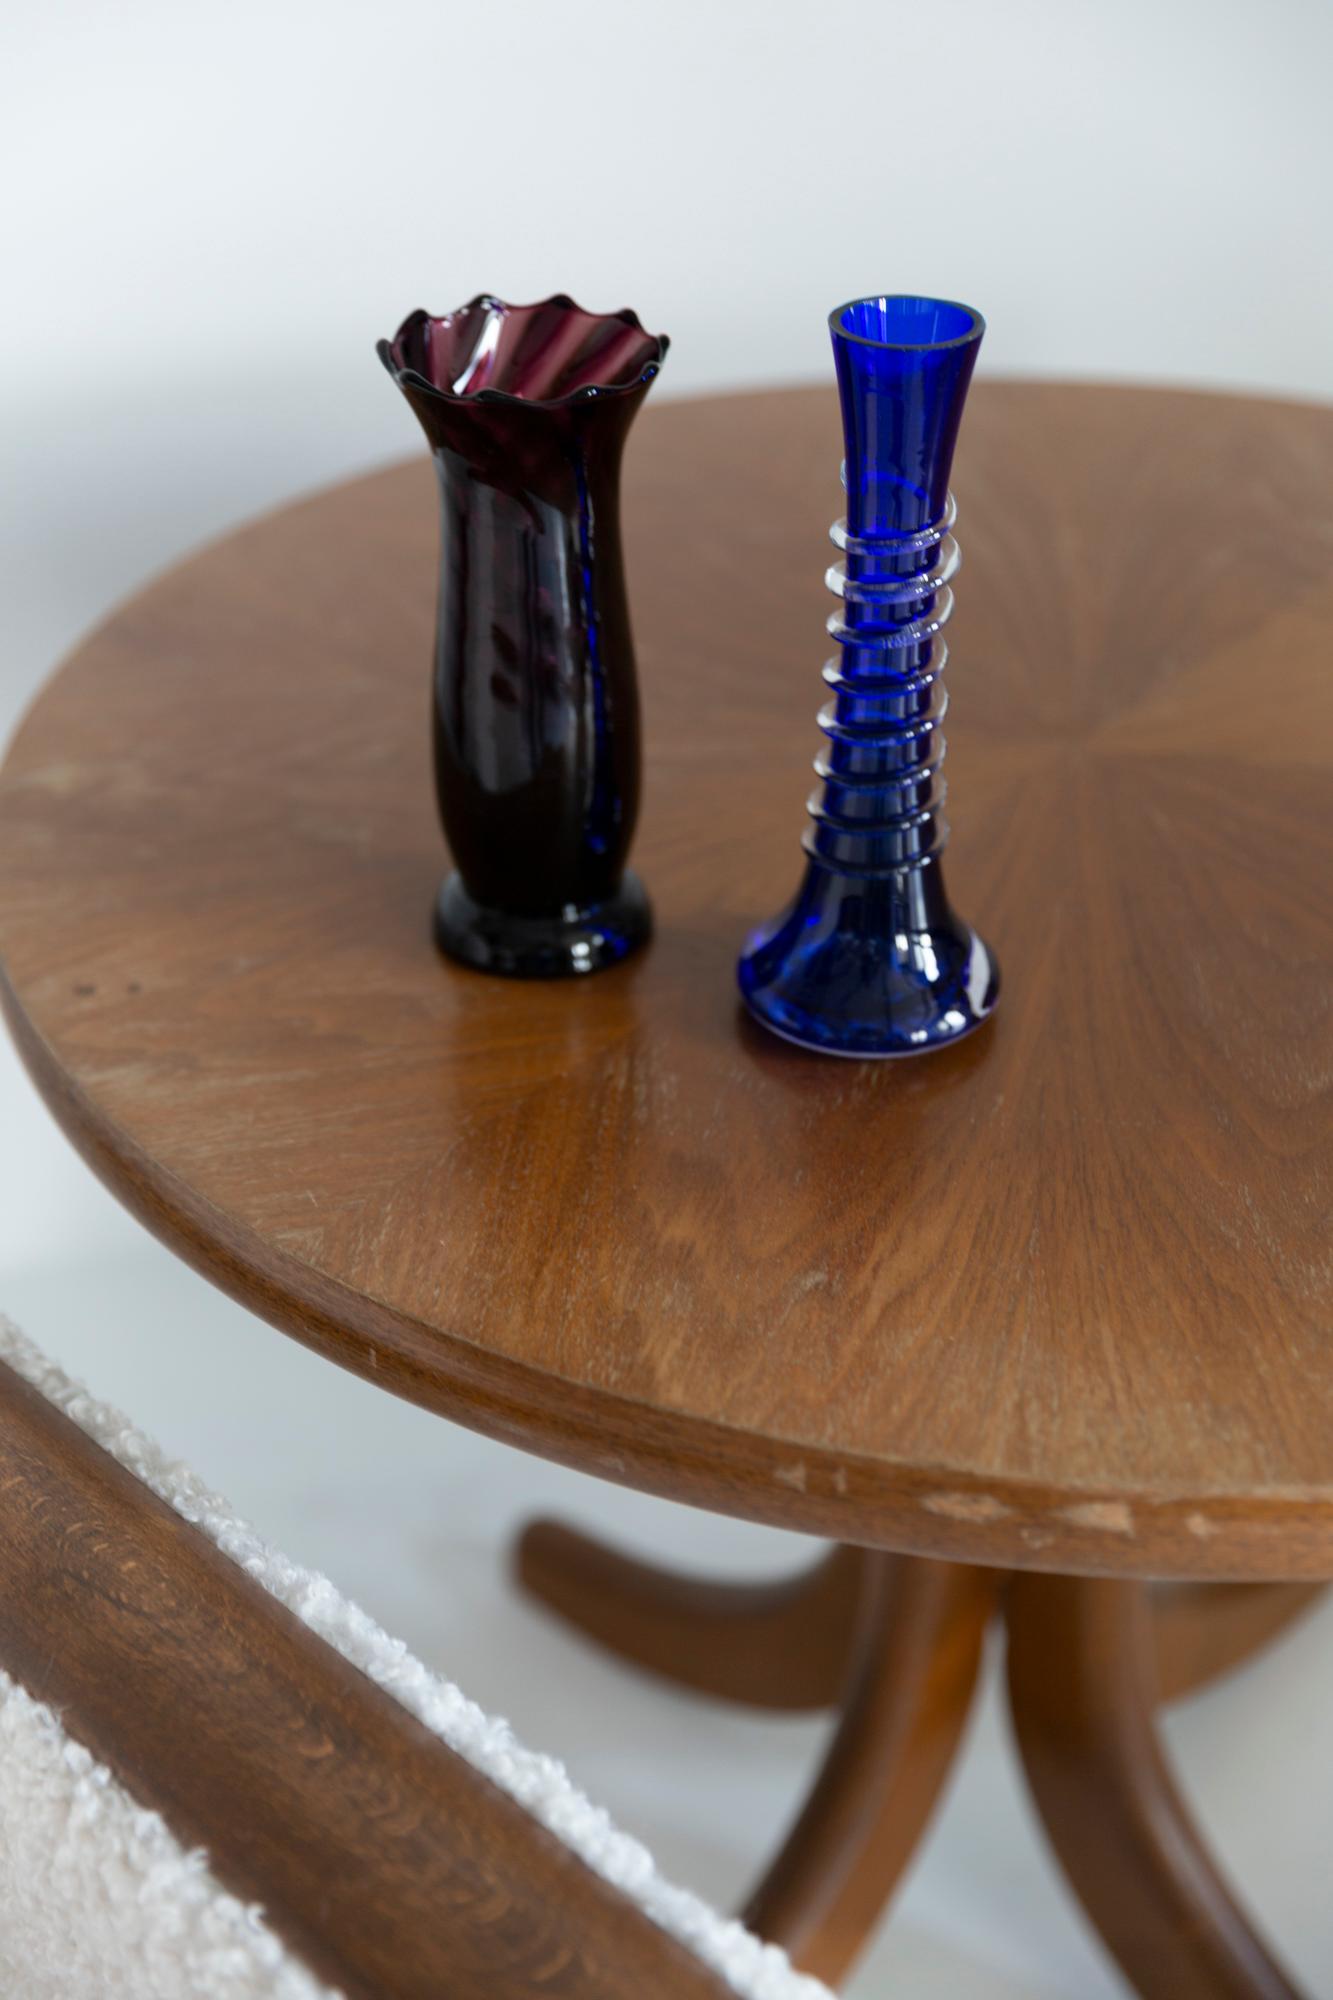 Tiefrote burgunderfarbene Vase in erstaunlich organischer Form. Produziert in den 1960er Jahren.
Glas in perfektem Zustand. Die Vase sieht aus, als wäre sie gerade erst aus der Schachtel genommen worden.

Keine Zacken, Mängel etc. Die äußere